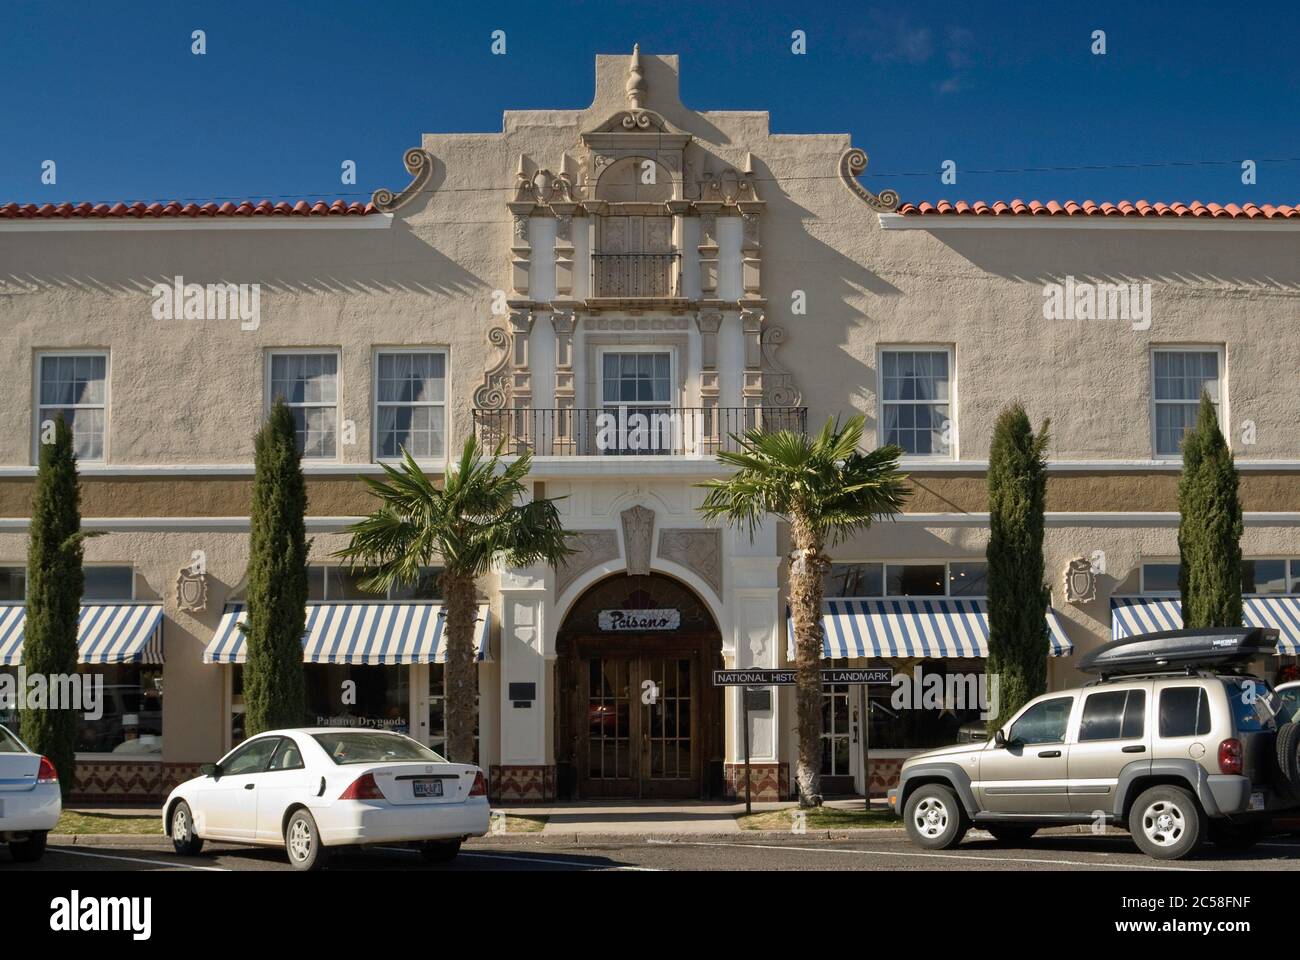 El Paisano Hotel in Marfa, Texas, USA Stock Photo - Alamy